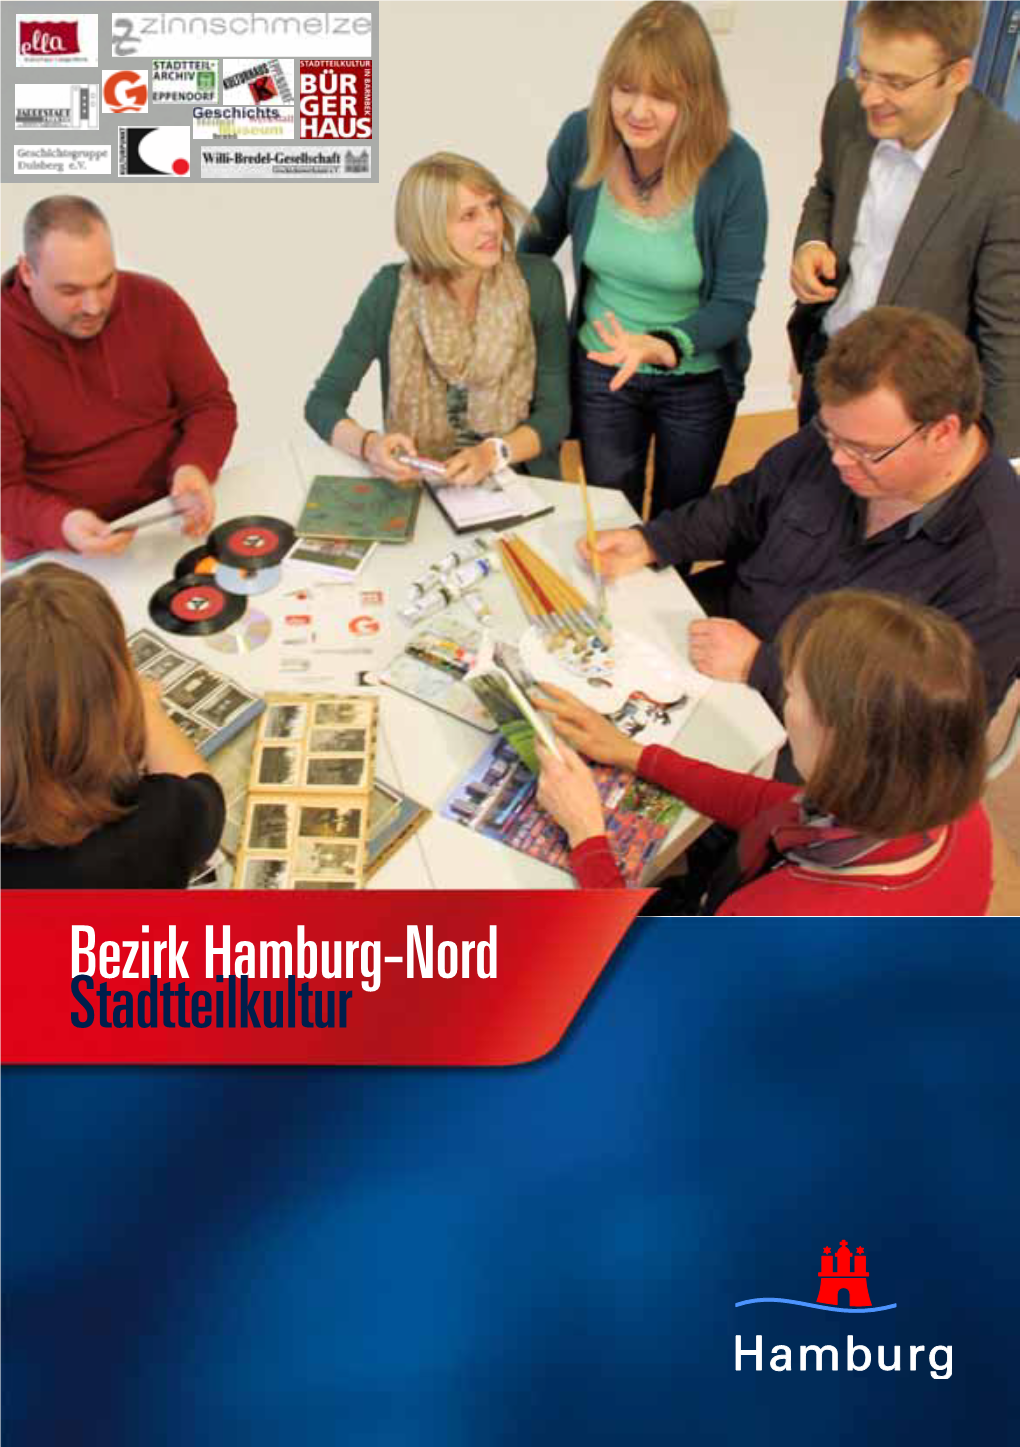 Bezirk Hamburg-Nord Stadtteilkultur Stadtteilkultur in Hamburg-Nord